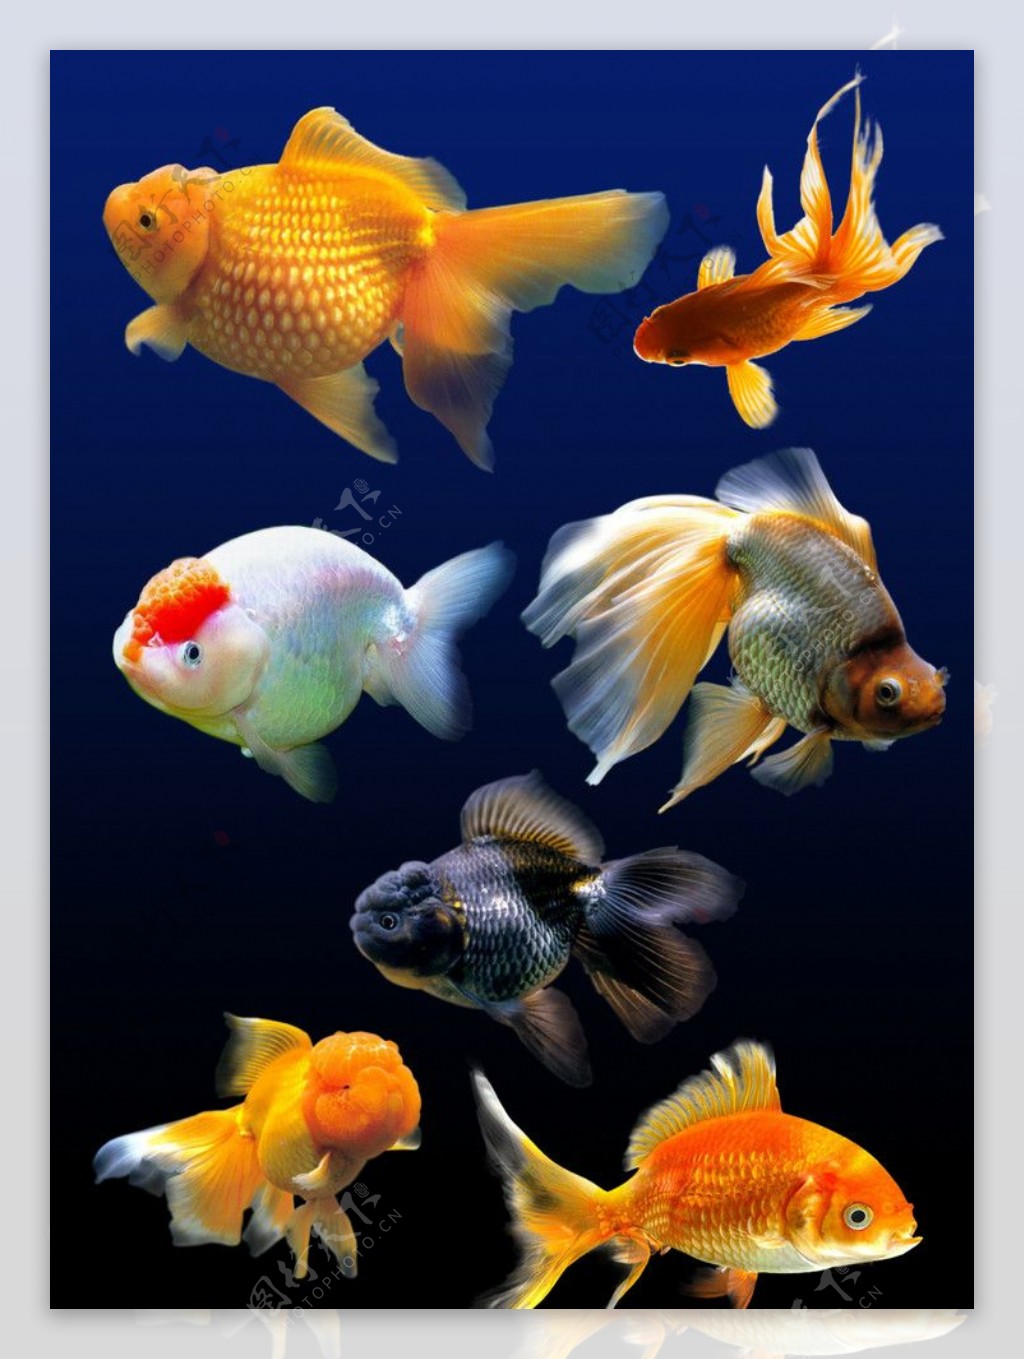 活泼灵动的金鱼,活泼,灵动,金鱼,鱼类,高清壁纸,桌面图片-壁纸族